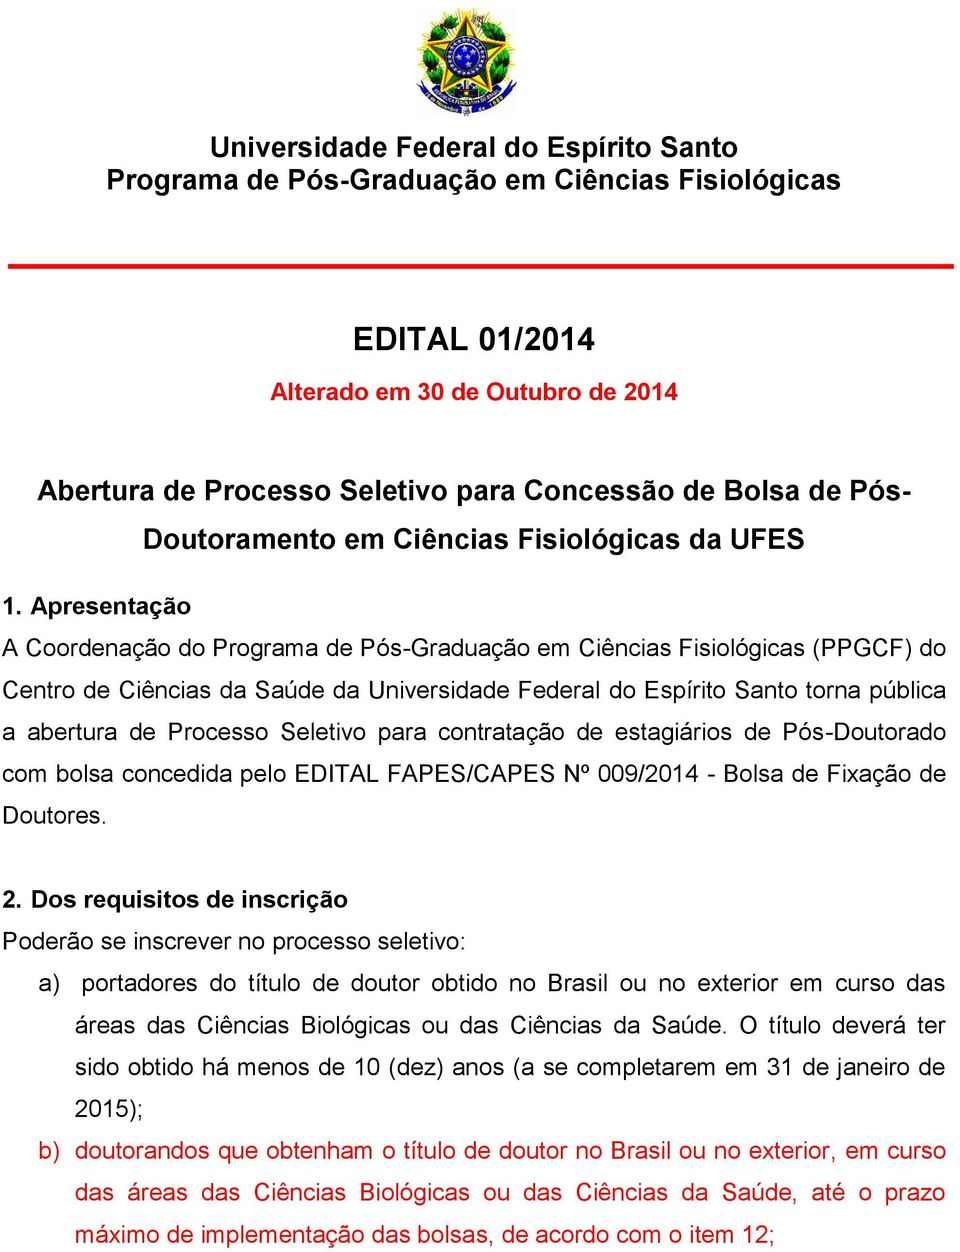 Apresentação A Coordenação do Programa de Pós-Graduação em Ciências Fisiológicas (PPGCF) do Centro de Ciências da Saúde da Universidade Federal do Espírito Santo torna pública a abertura de Processo